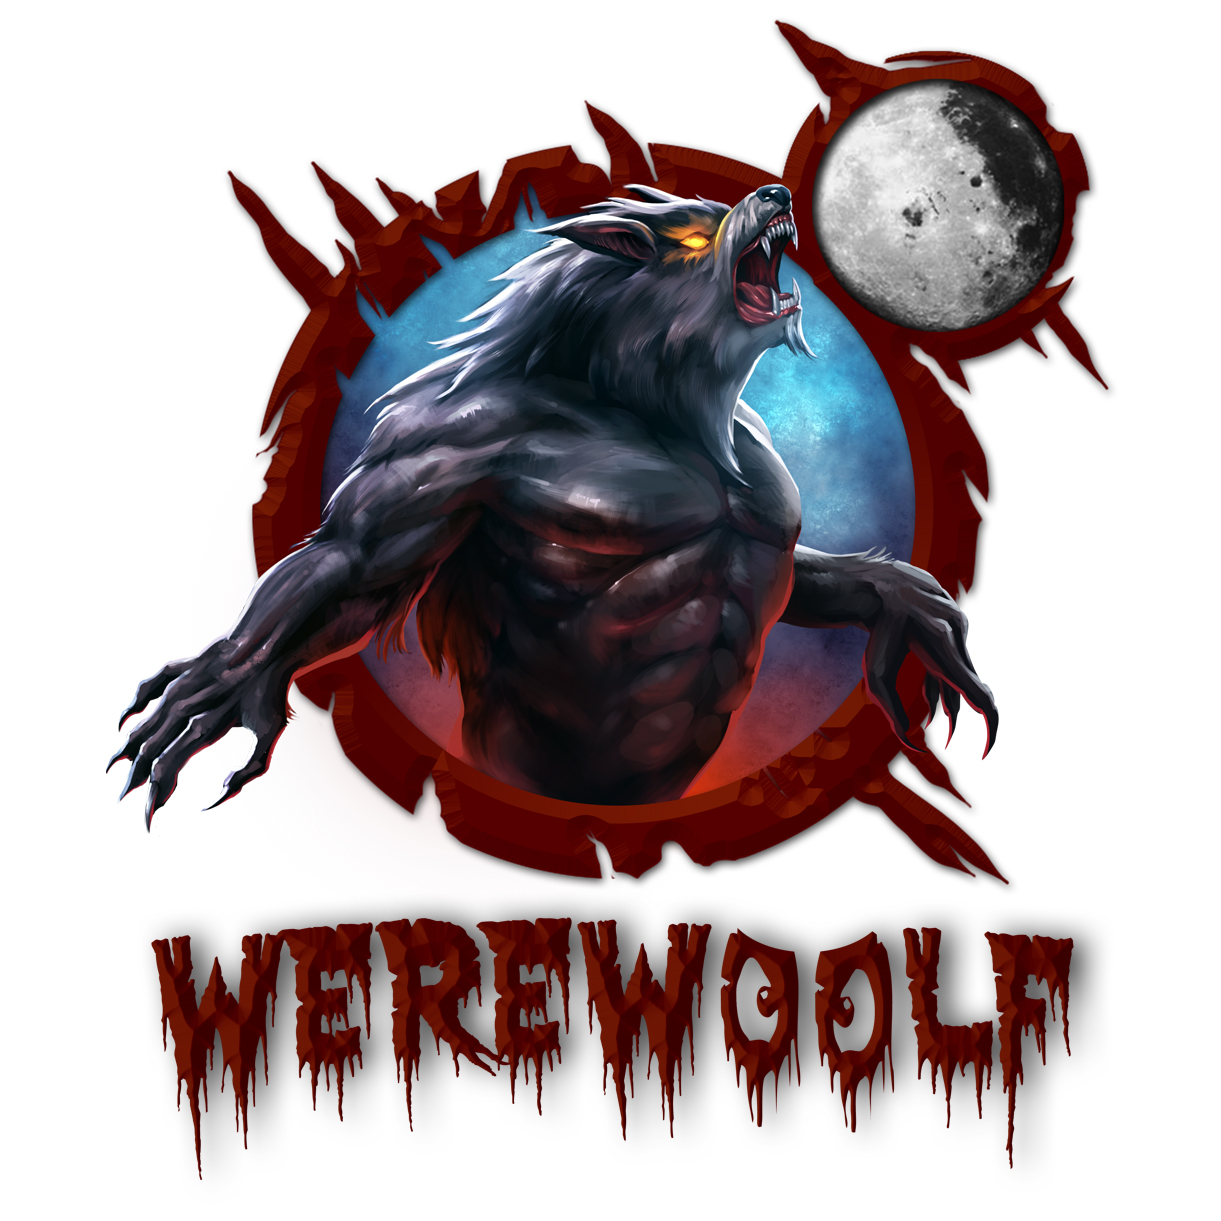 Werewoolf Miniatures: William Woolf The Werewolf